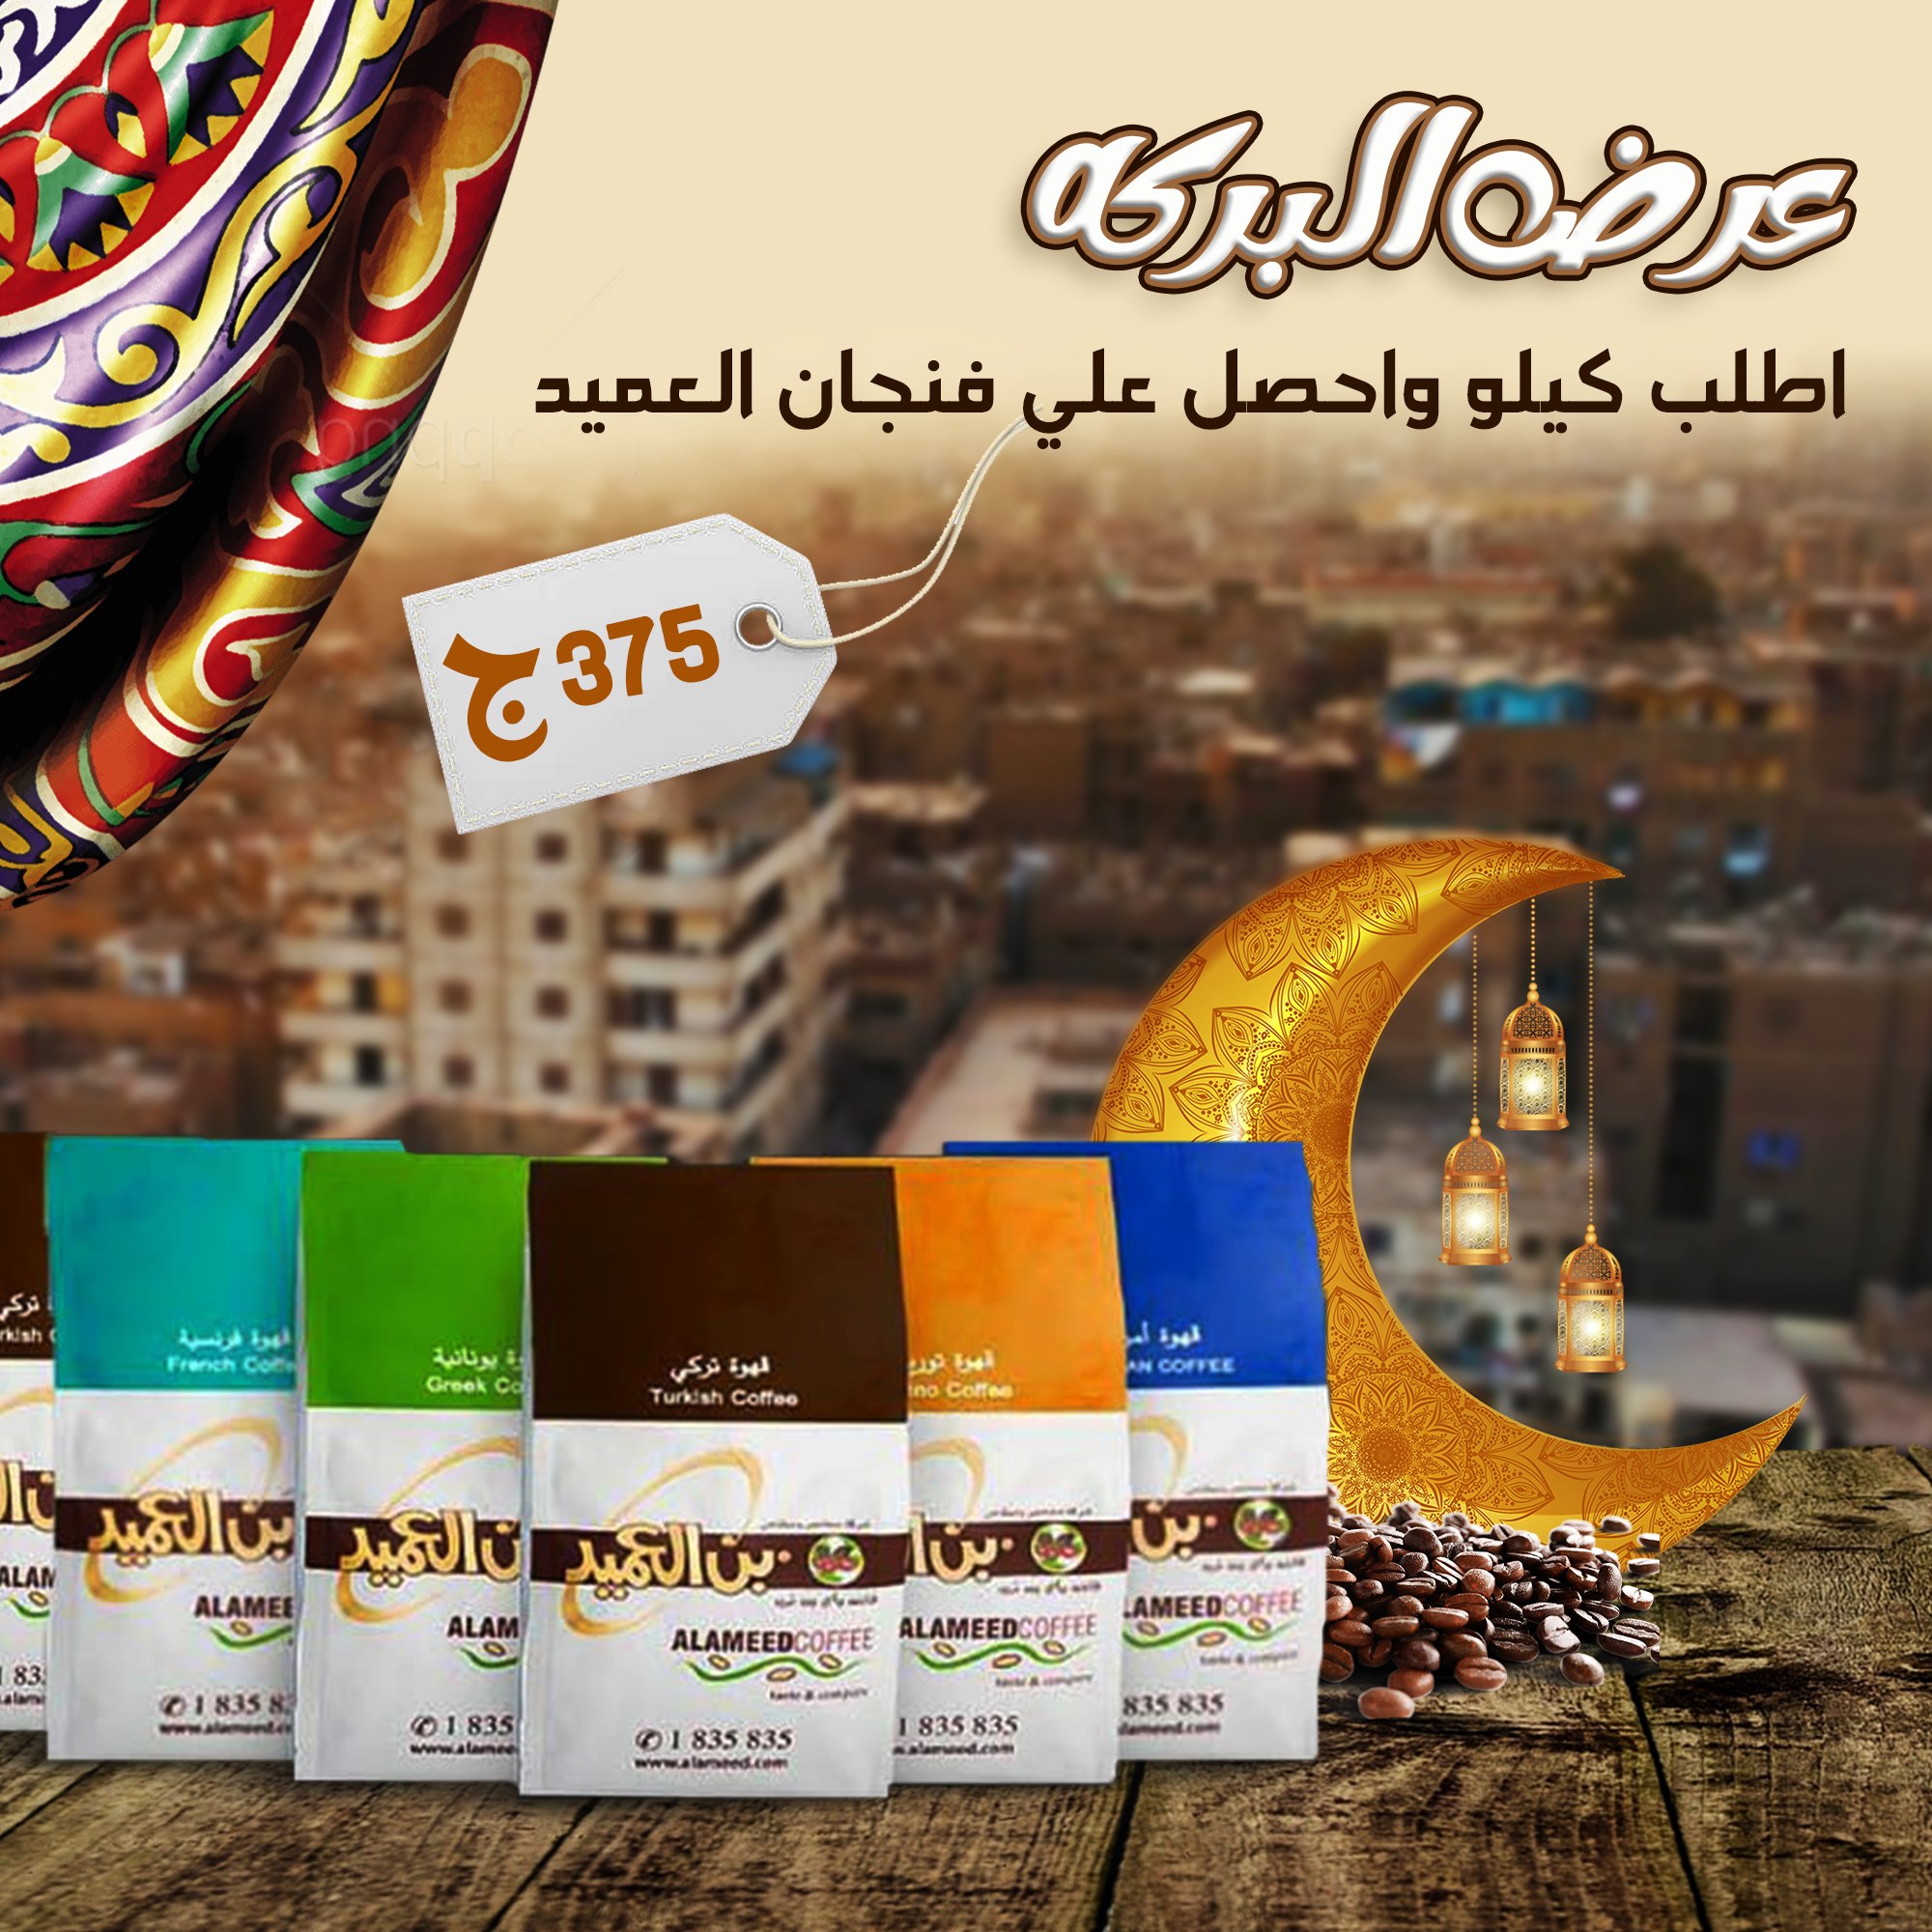 بن العميد الكويتي – Alameed Coffee Kuwait